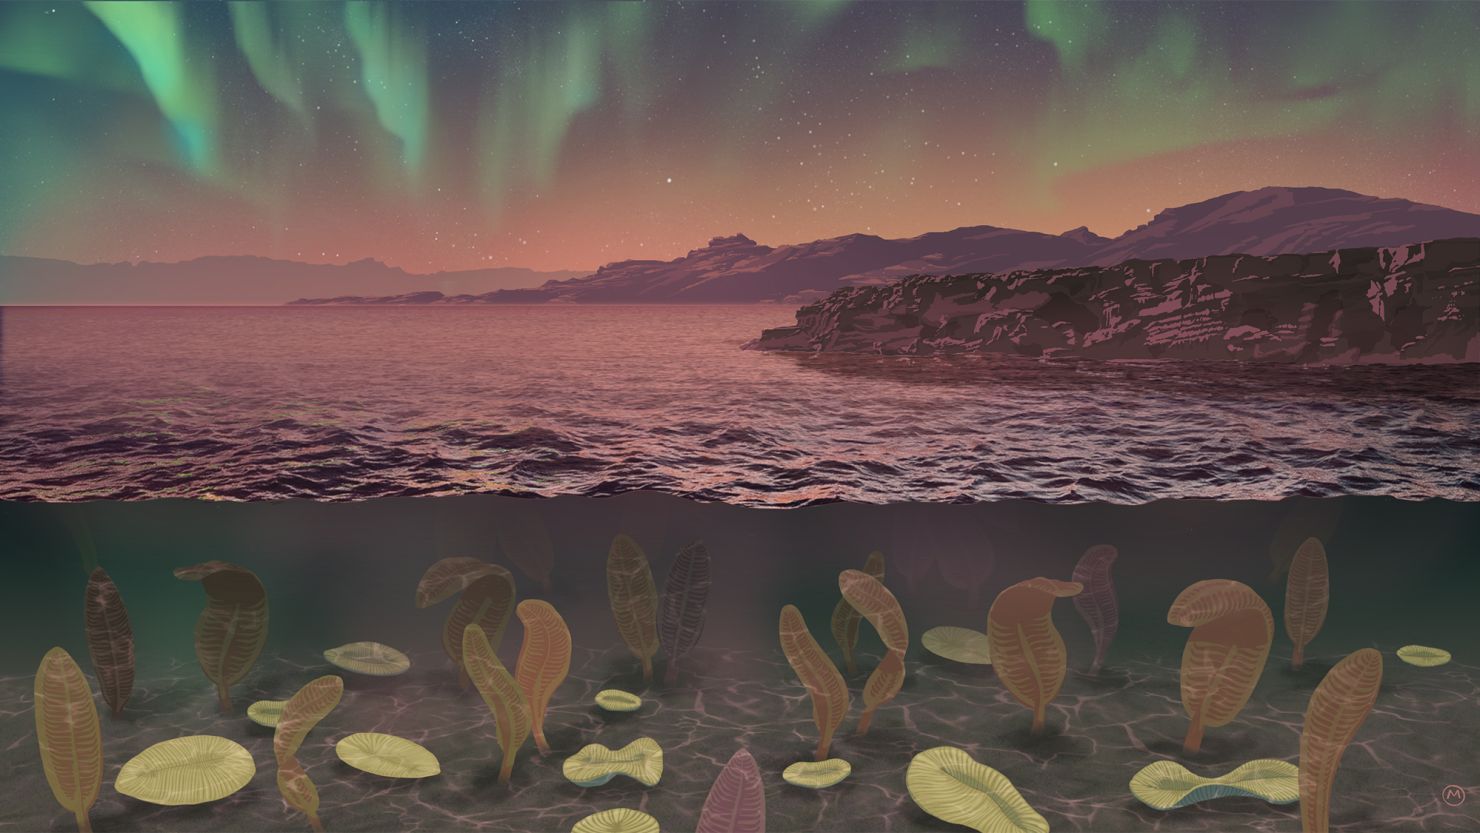 A impressão de um artista retrata a aparência da Terra durante o Período Ediacarano, quando a vida complexa começou a florescer.